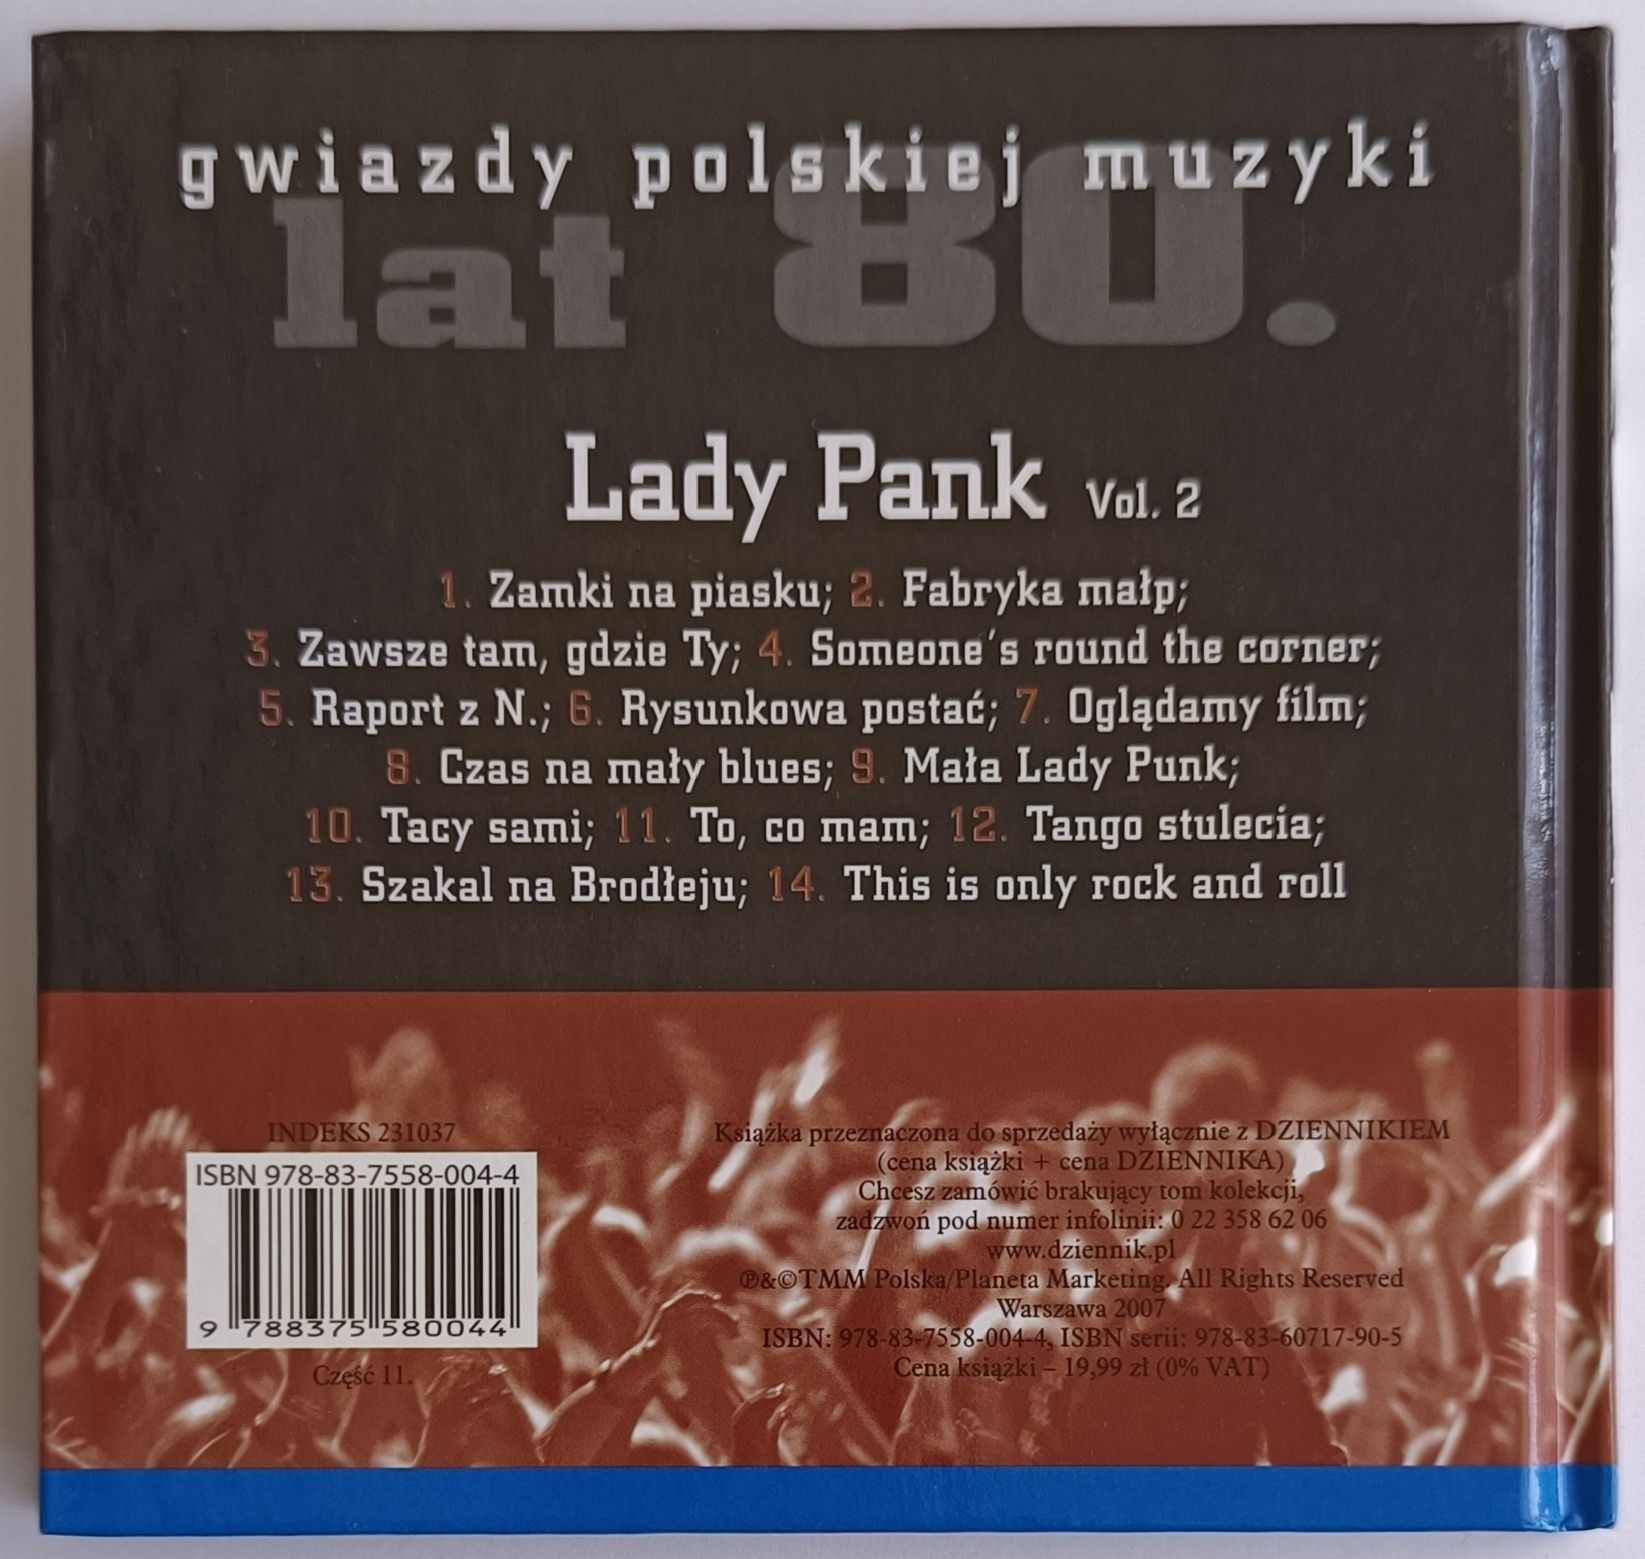 Lady Pank Gwiazdy Polskiej Muzyki Lat 80 tych vol.2 2007r